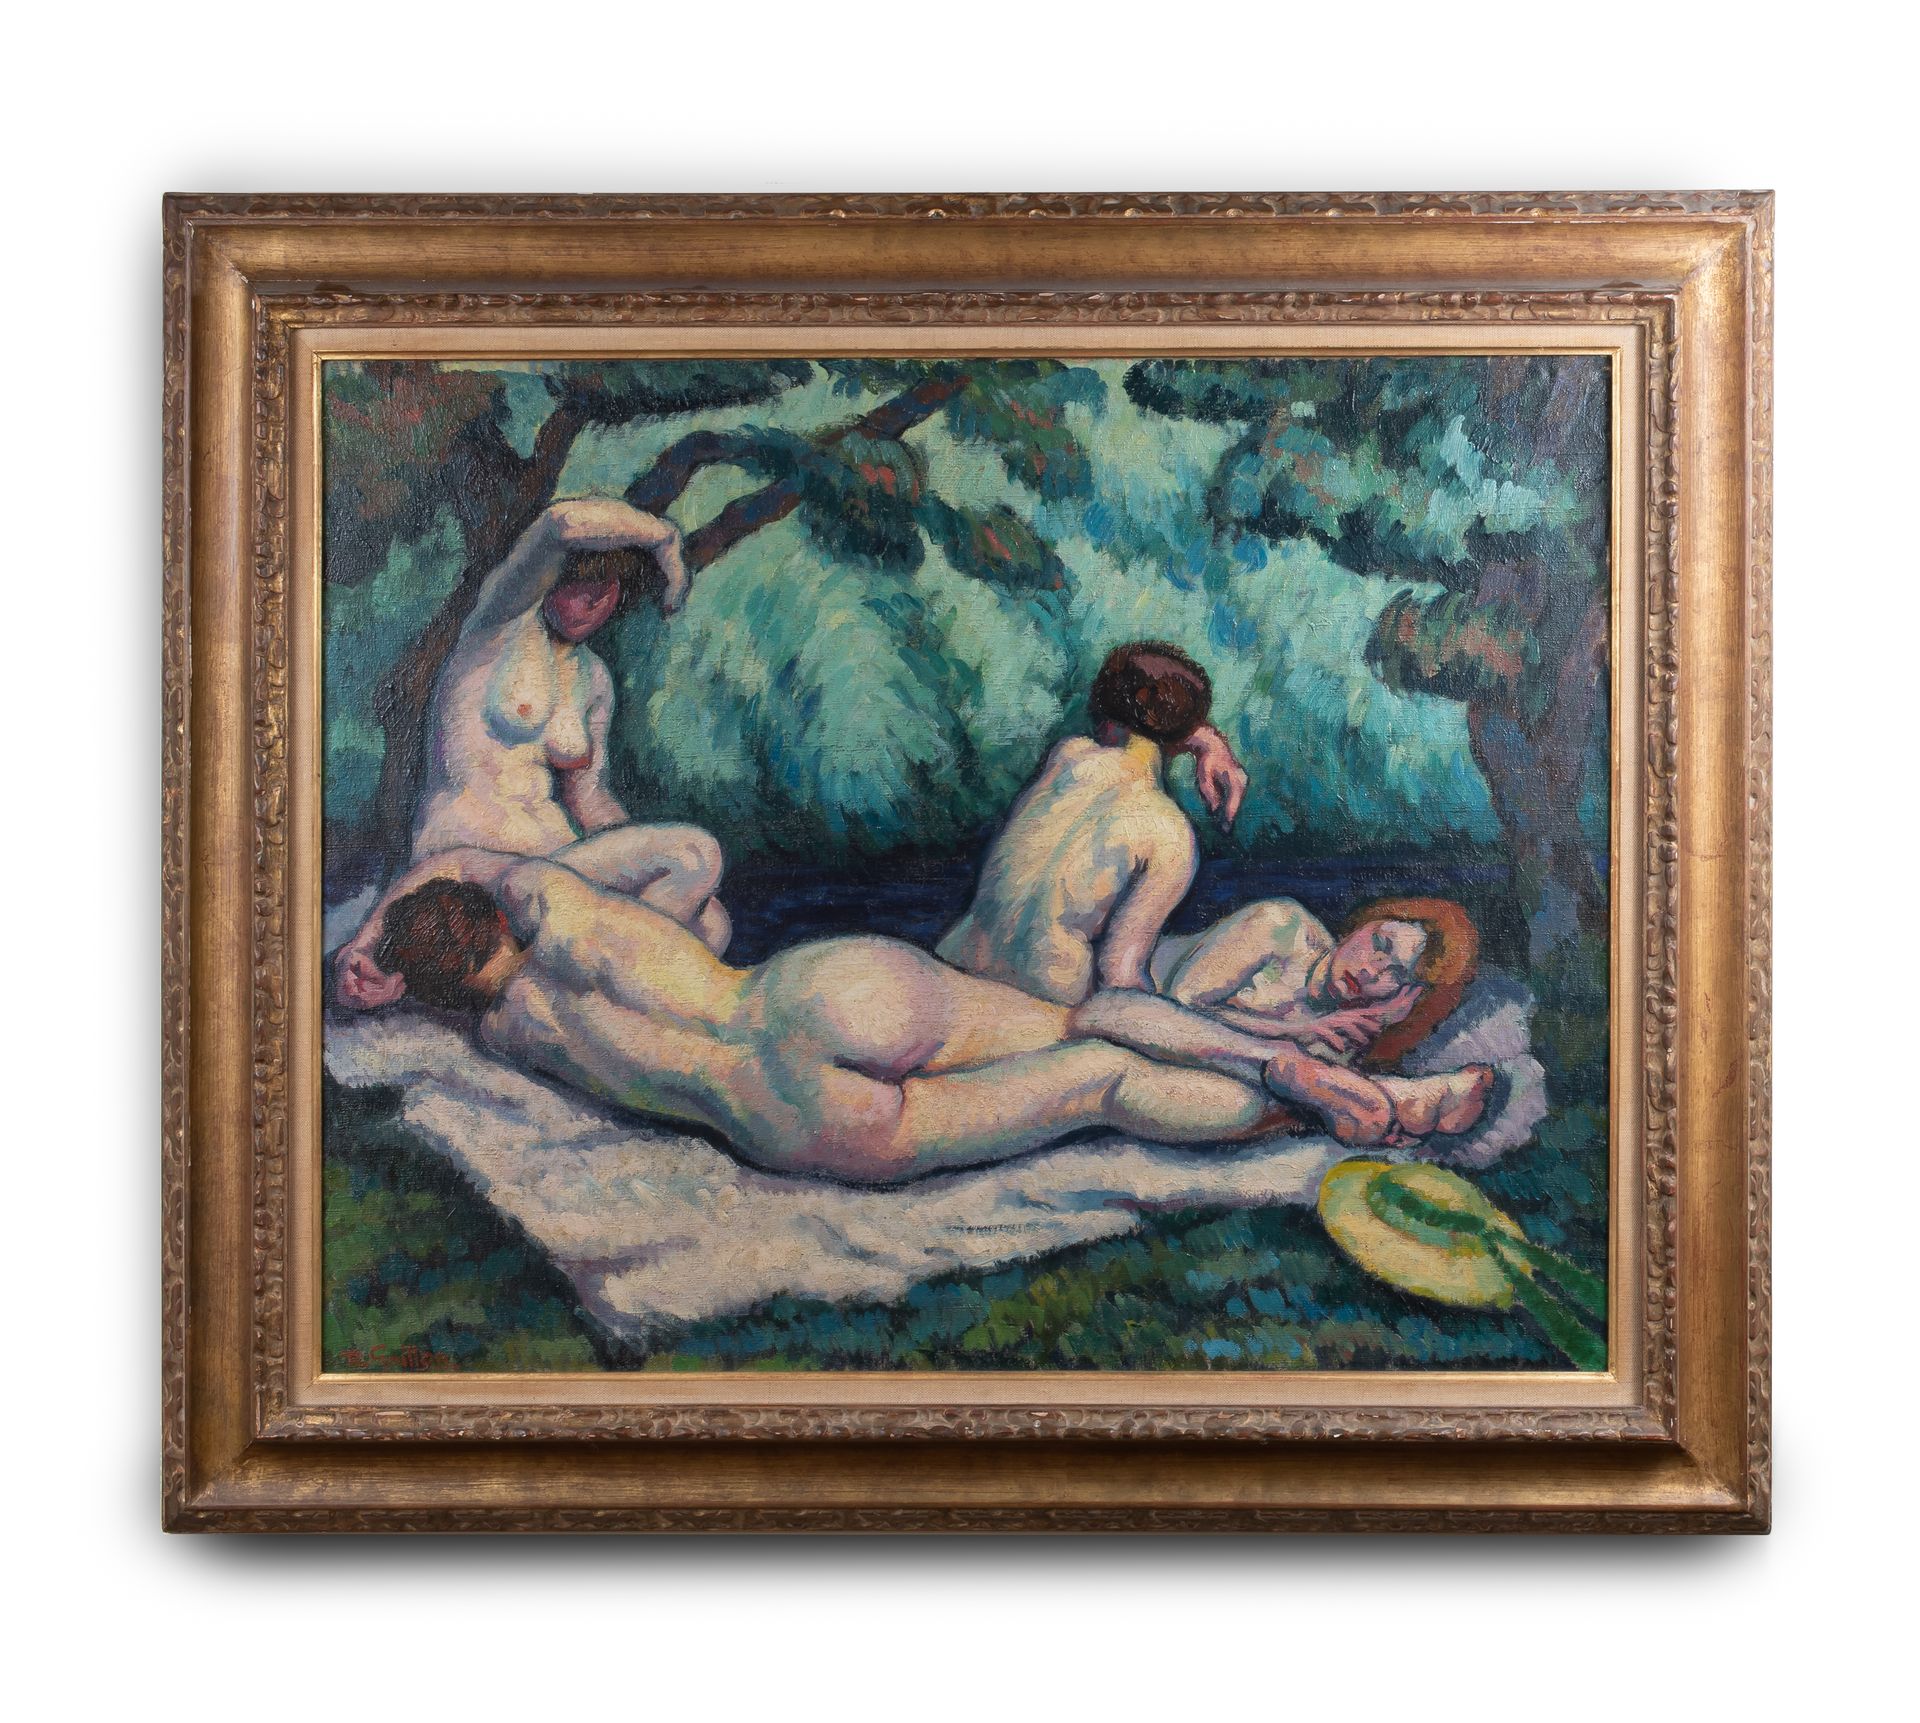 Null 罗杰-格里隆 (1881-1938)

沐浴者，1914年

布面油画，左下角有签名，框架背面有标题和日期

71.5 x 91 cm 正在观看


&hellip;